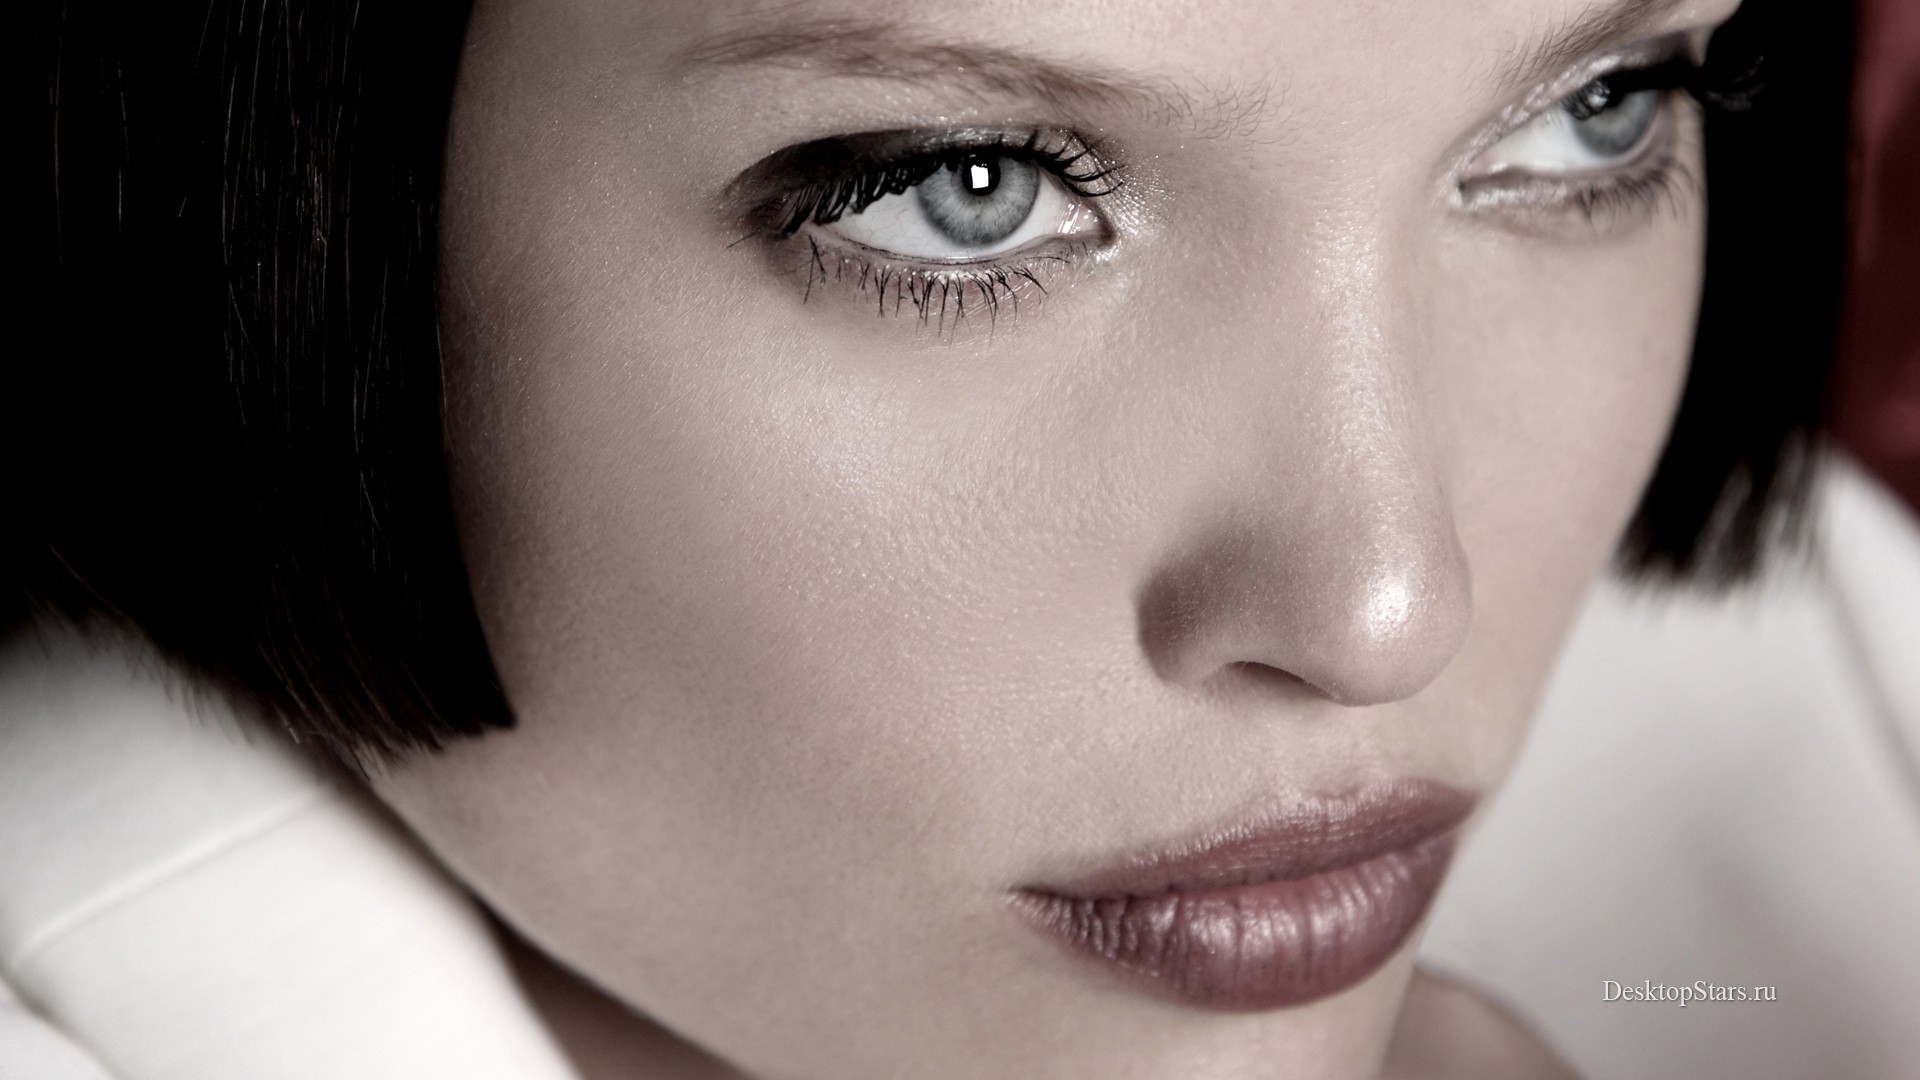 People 1920x1080 gray eyes dark hair actress France face closeup women makeup lipstick